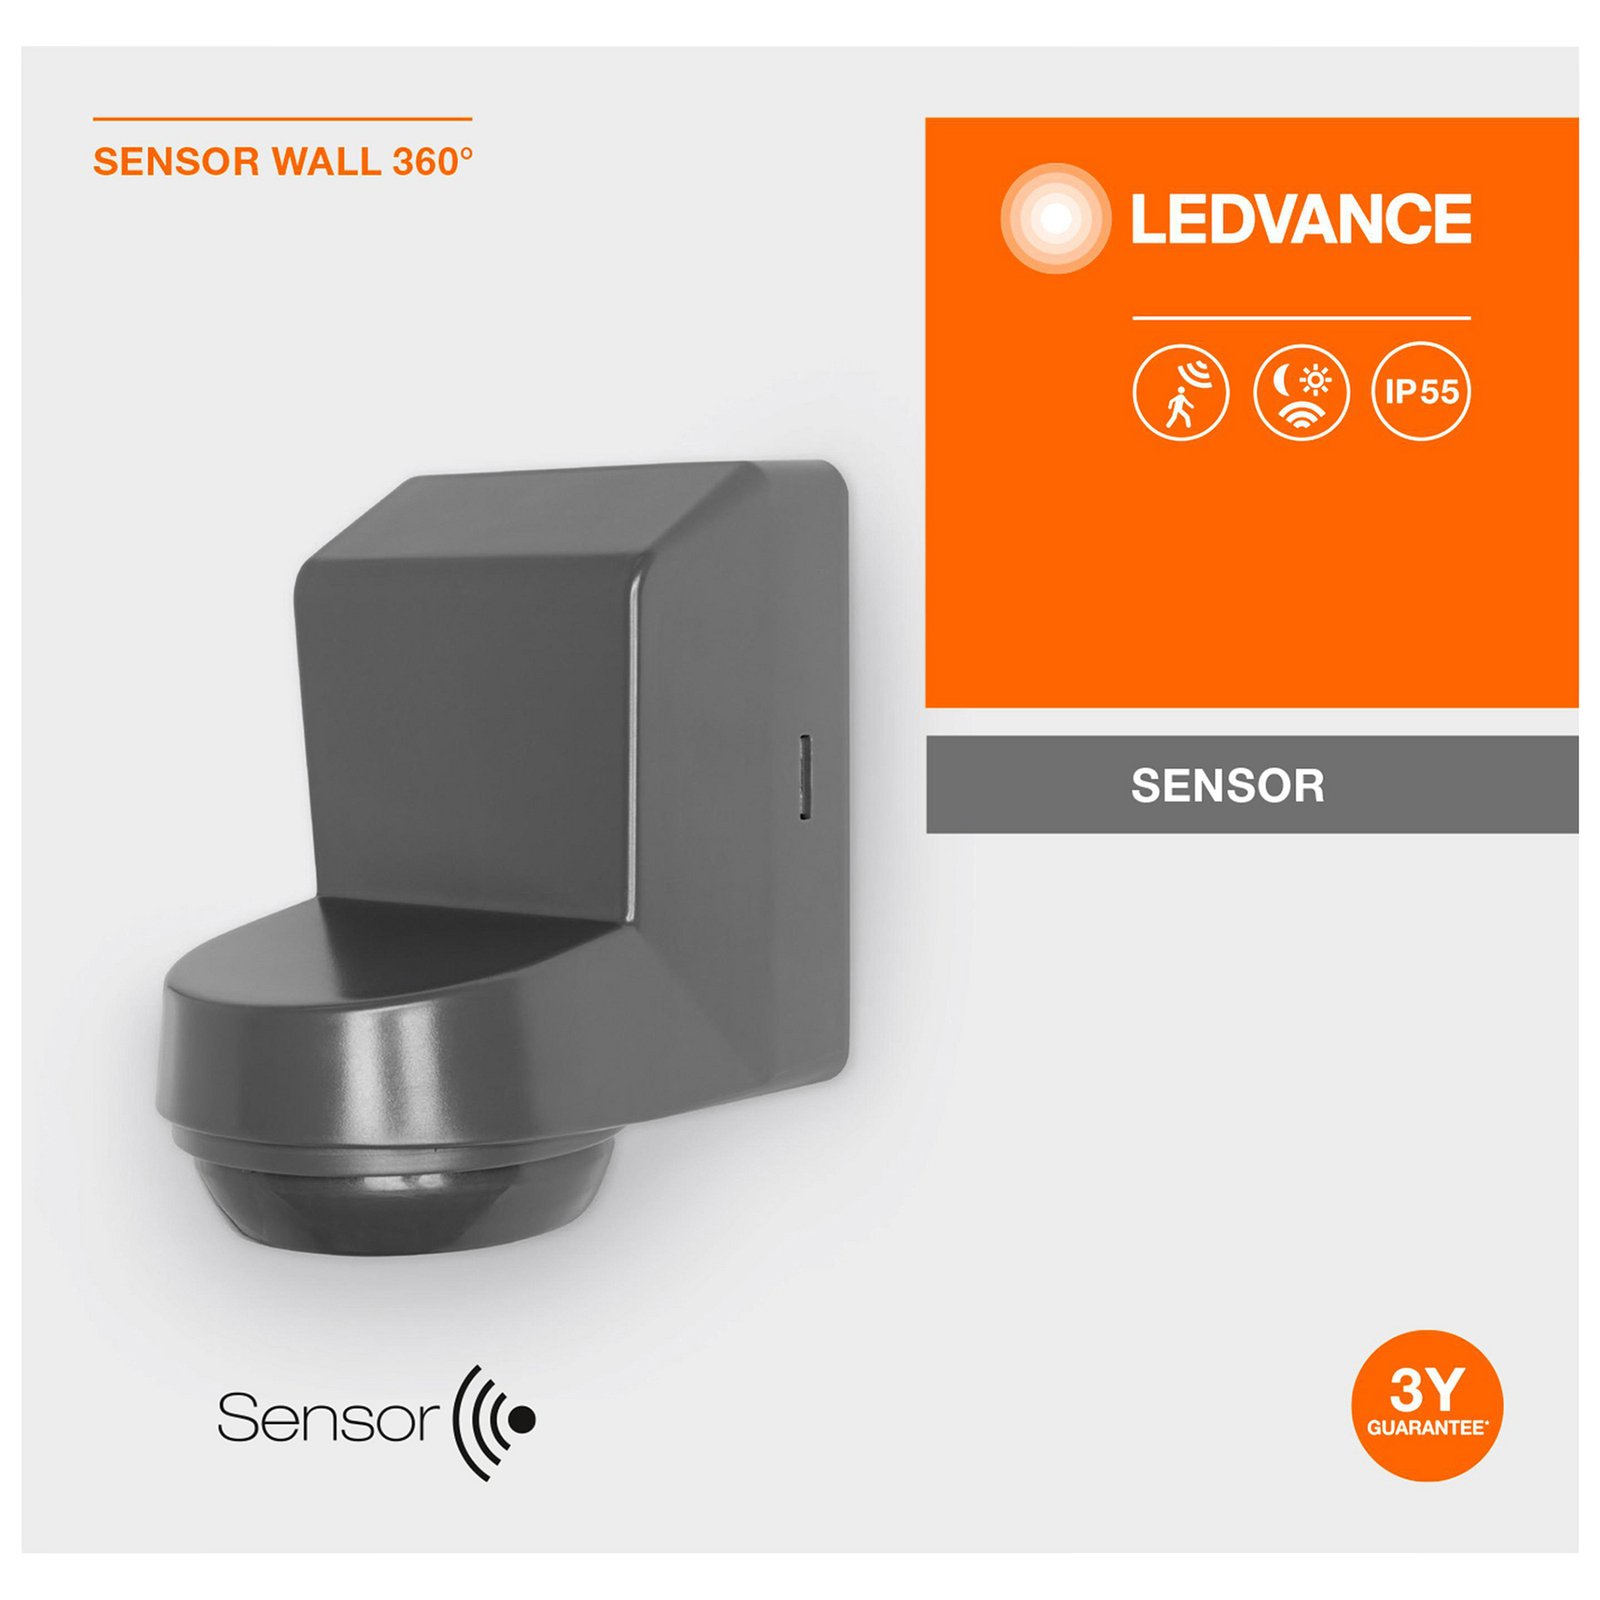 LEDVANCE Sensor Wall 360DEG IP55, gris oscuro